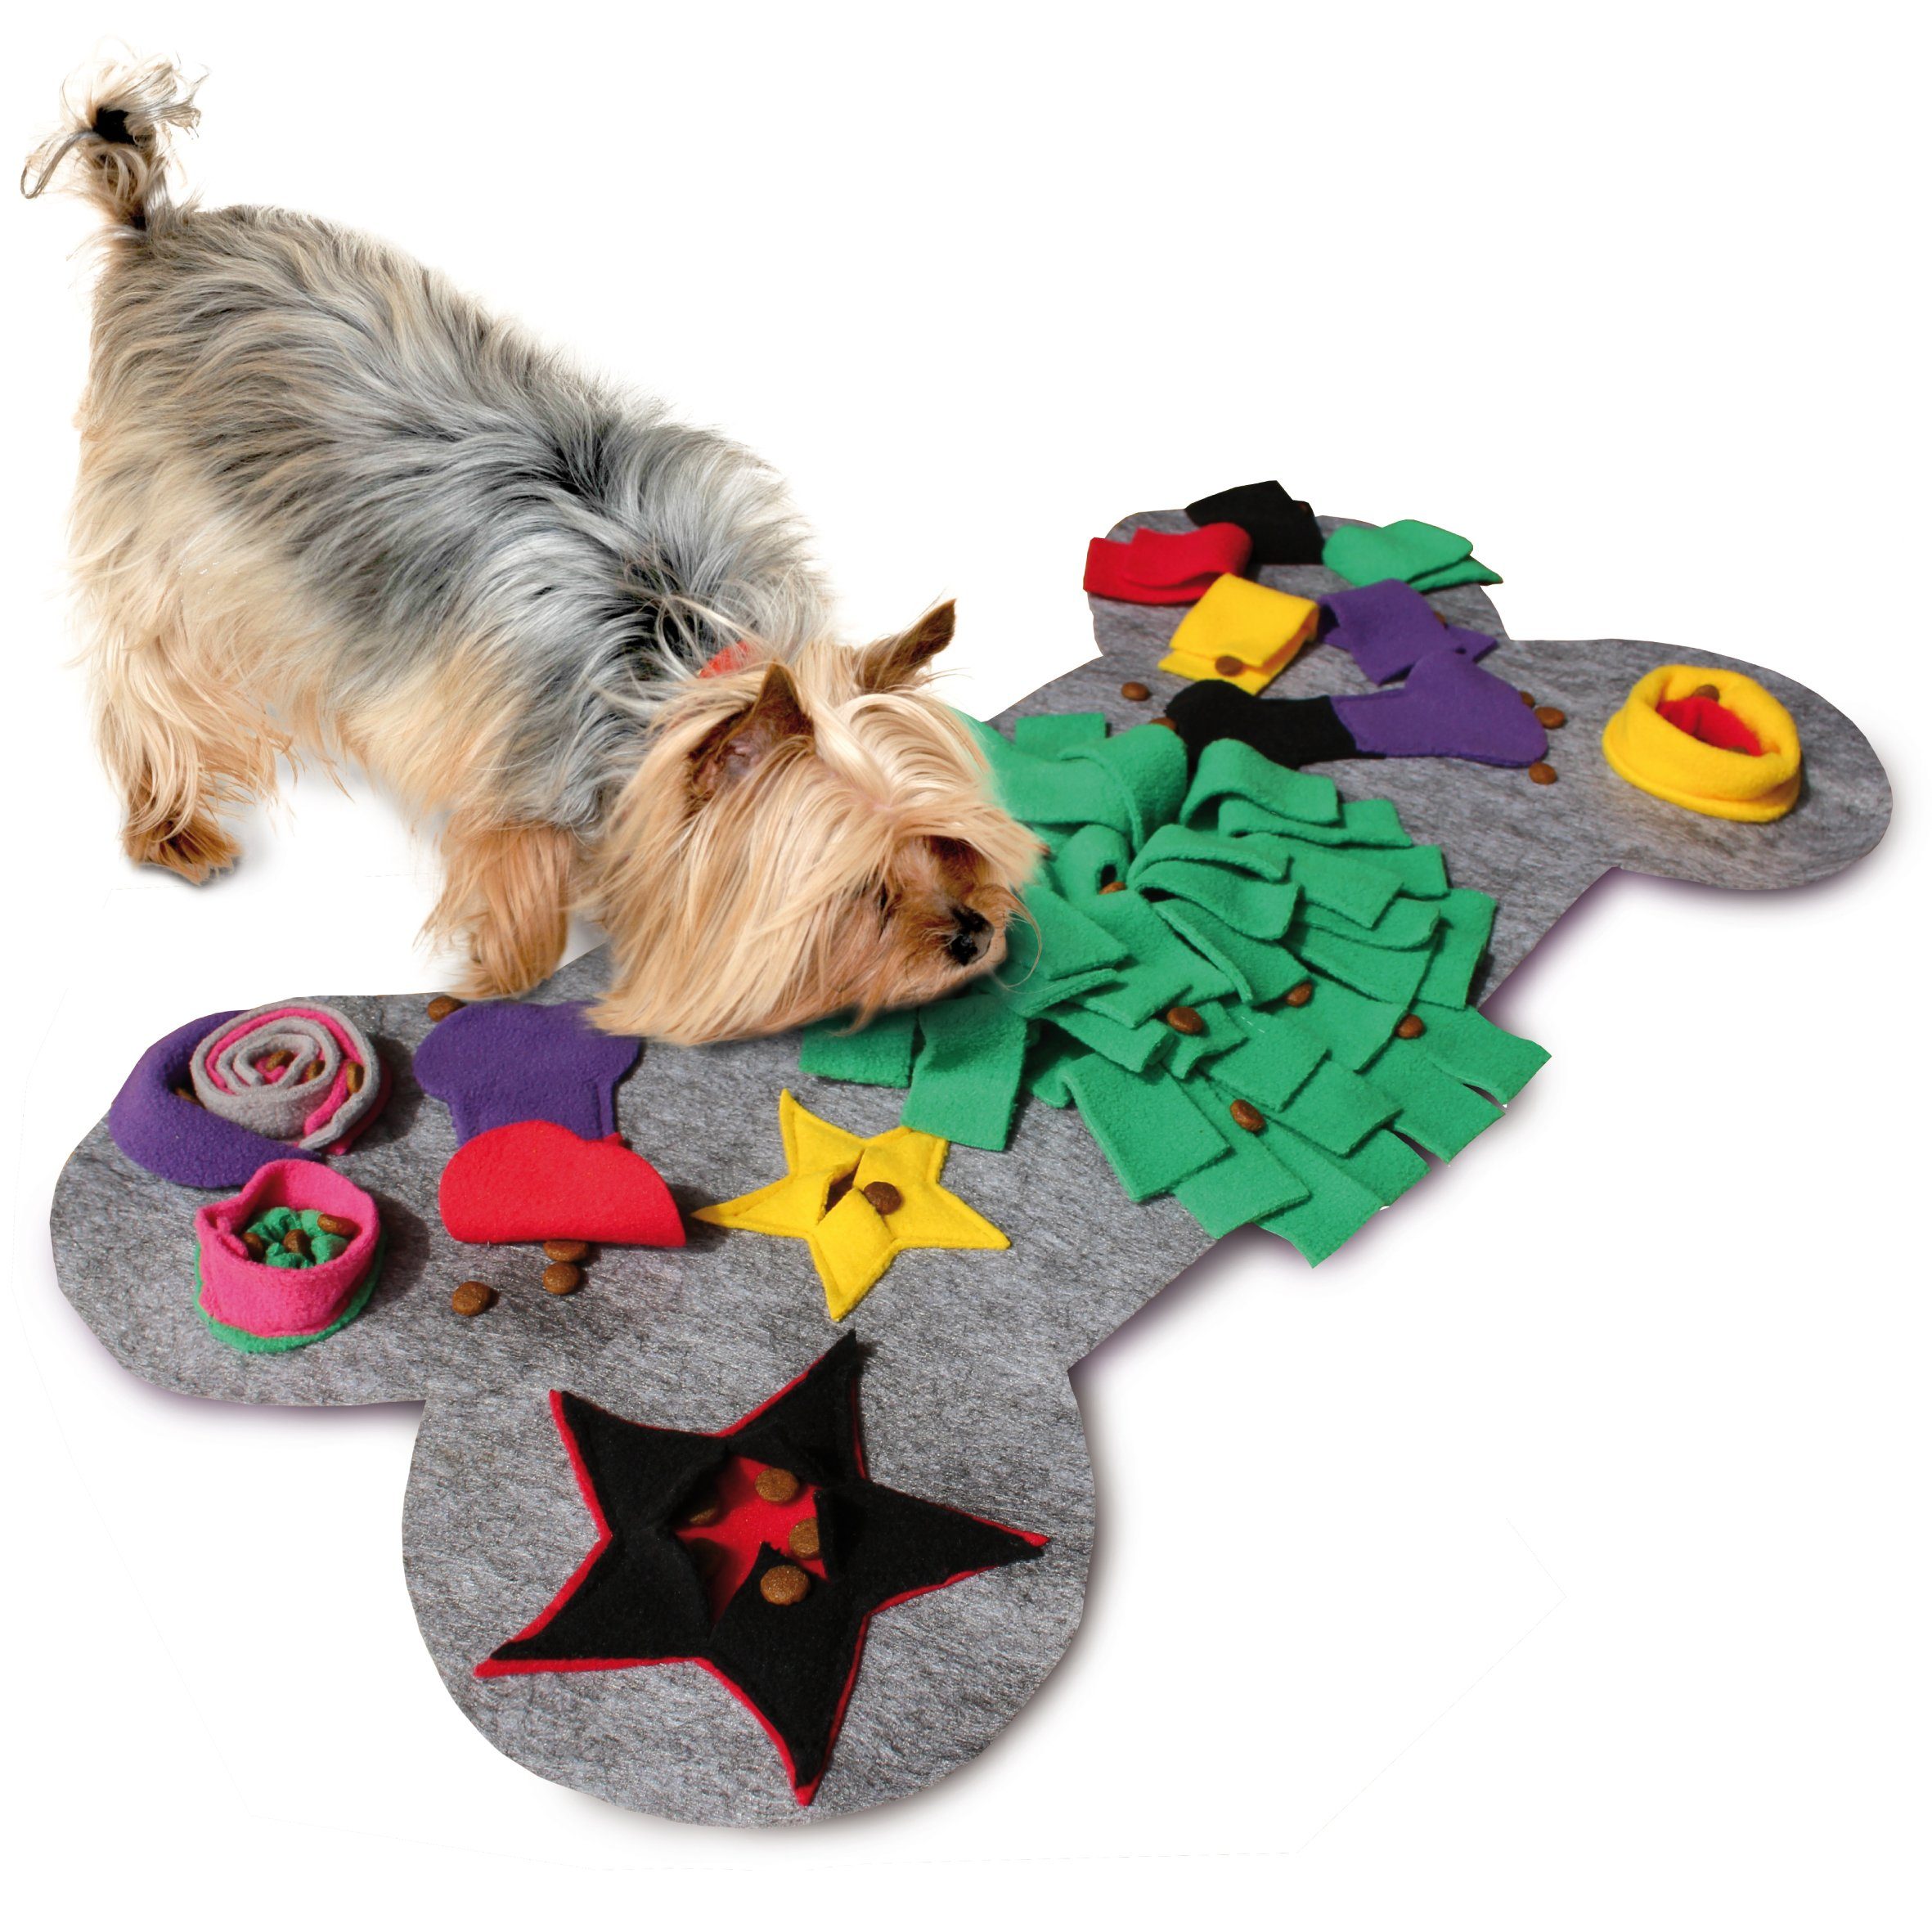 KaraLuna Schnüffelteppich »Schnüffelteppich für kleine & mittlere Hunde,  60x32cm I Schnüffelmatte Hund Suchteppich Schnüffeldecke  Intelligenzspielzeug Hundespielzeug« online kaufen | OTTO